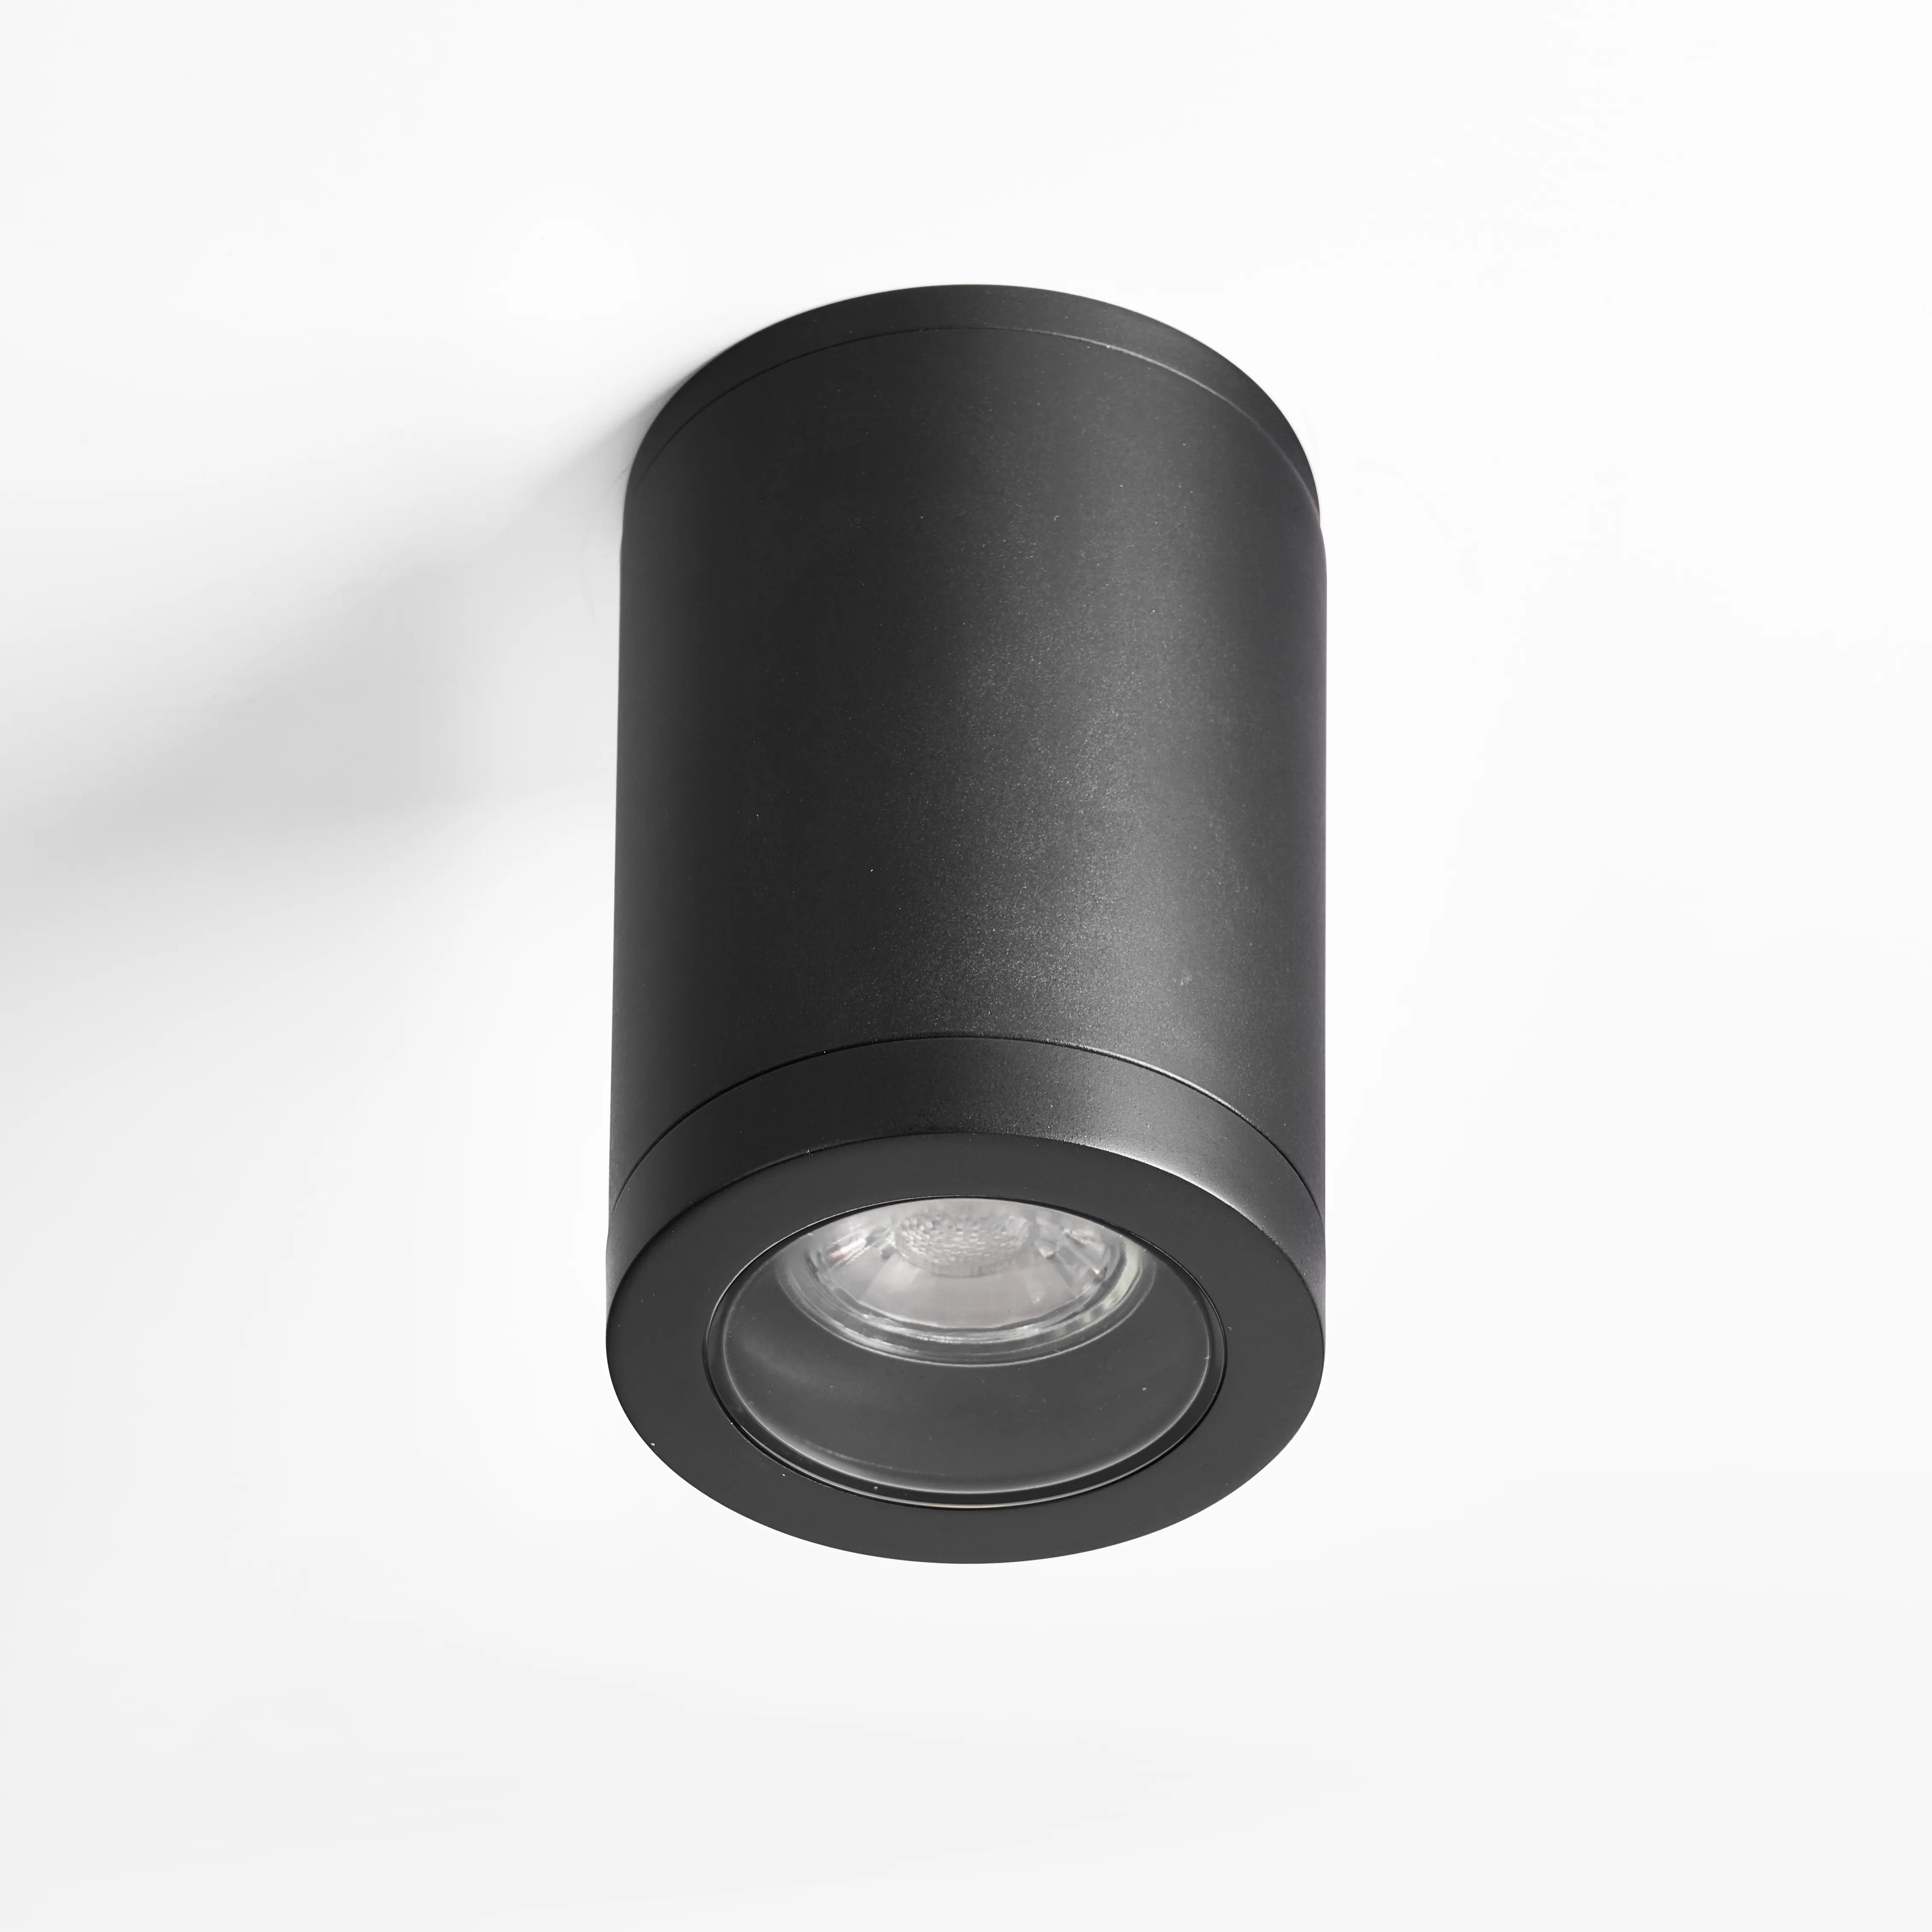 P9013 materiale plastico Moderna all'aperto IP54 rotonda cilindro ha condotto la luce di soffitto da incasso